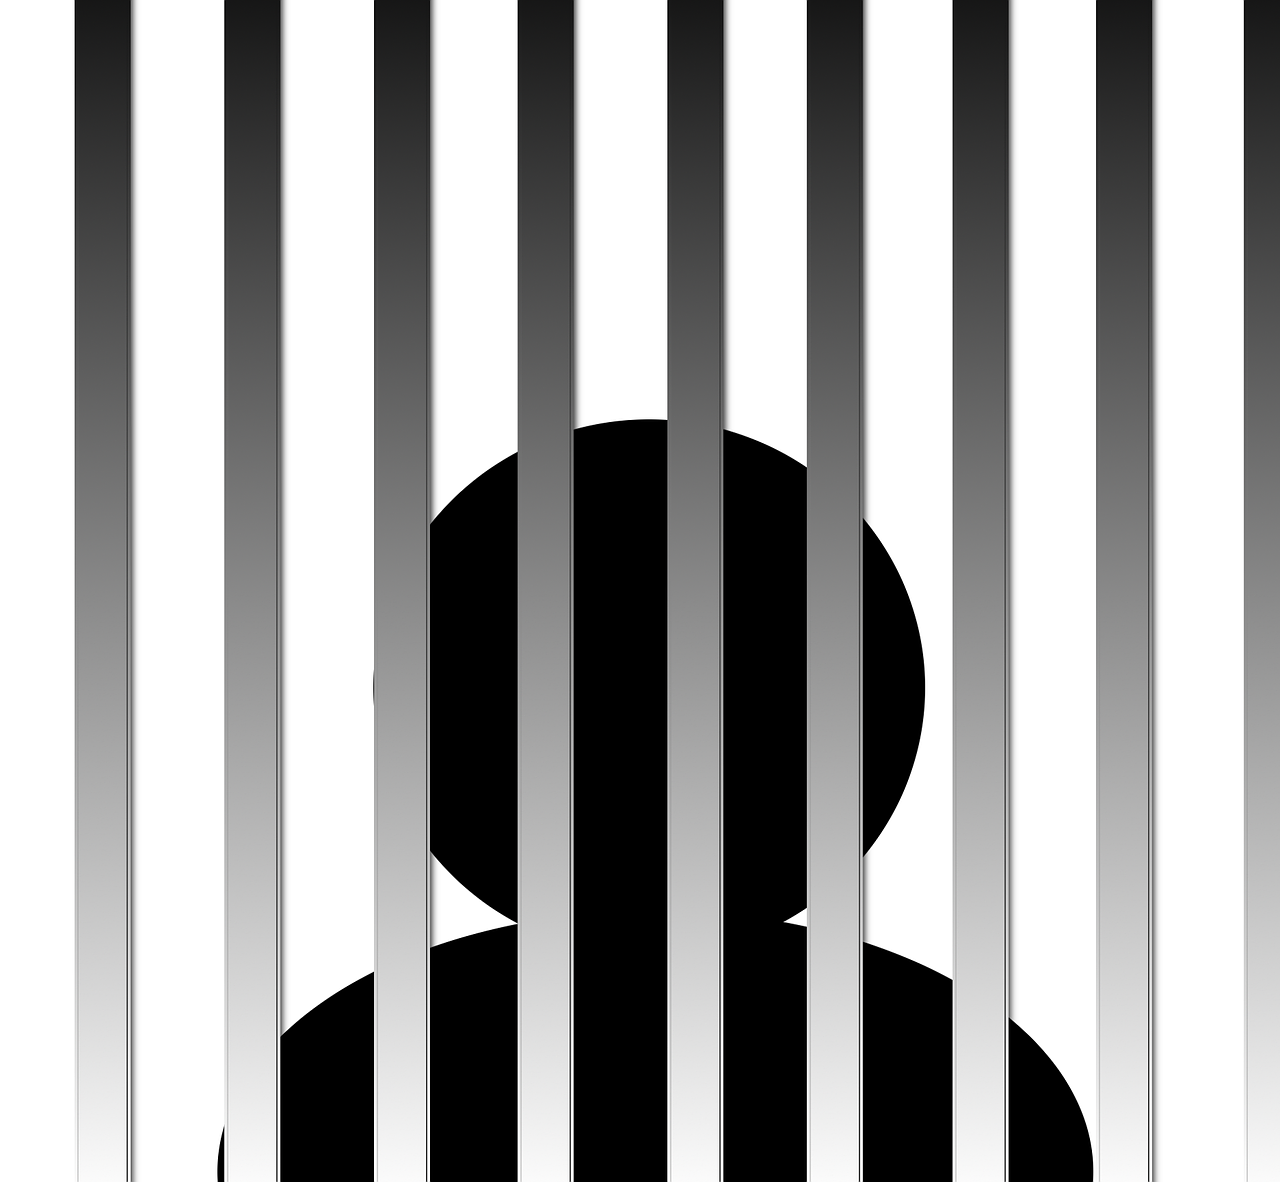 Sex offender behind bars afte